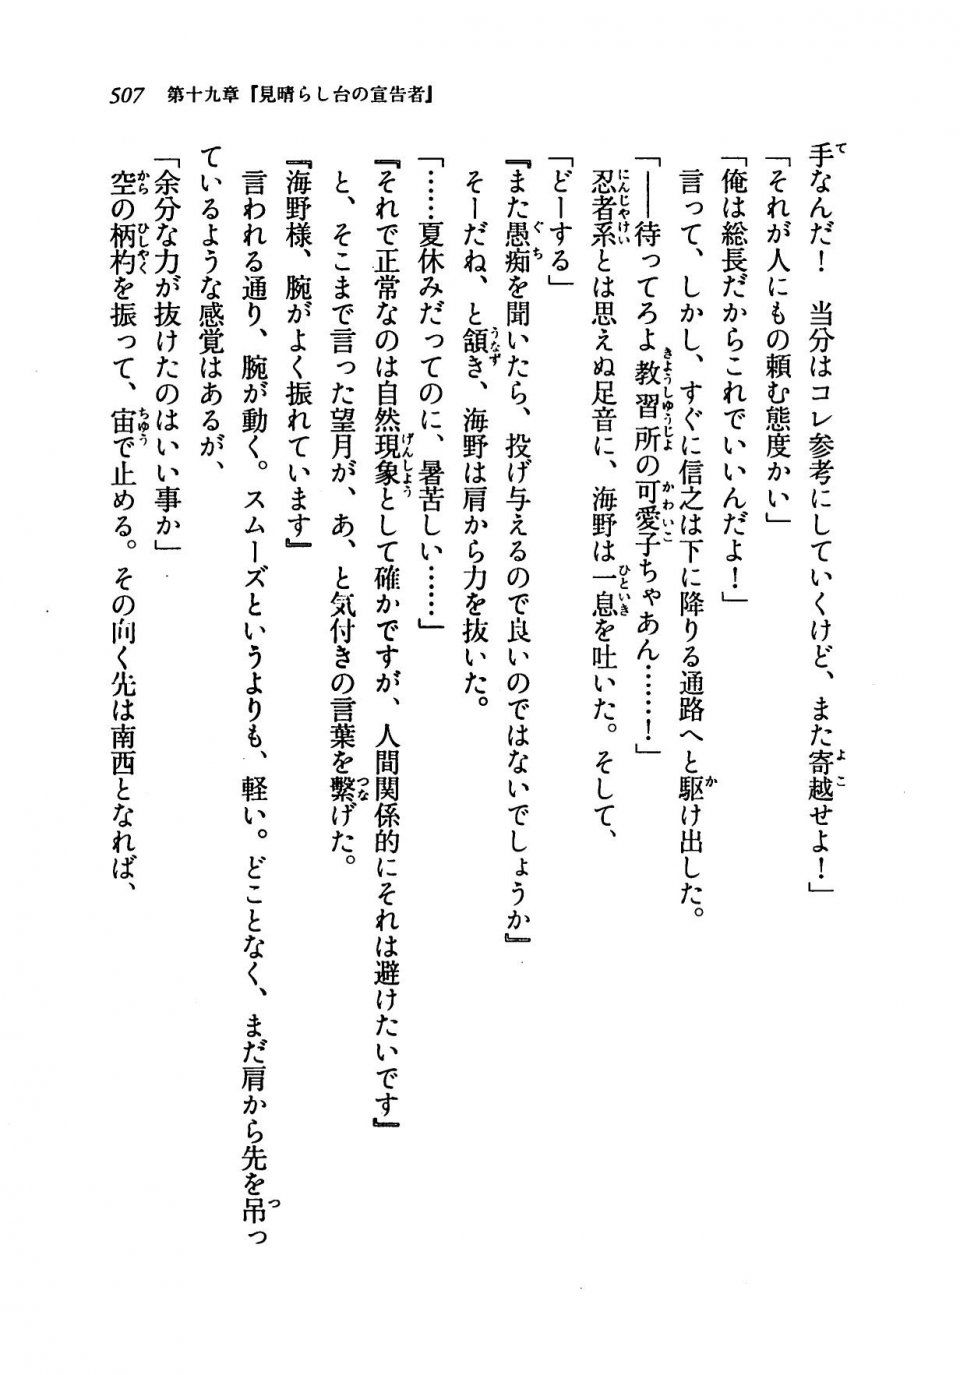 Kyoukai Senjou no Horizon LN Vol 19(8A) - Photo #507